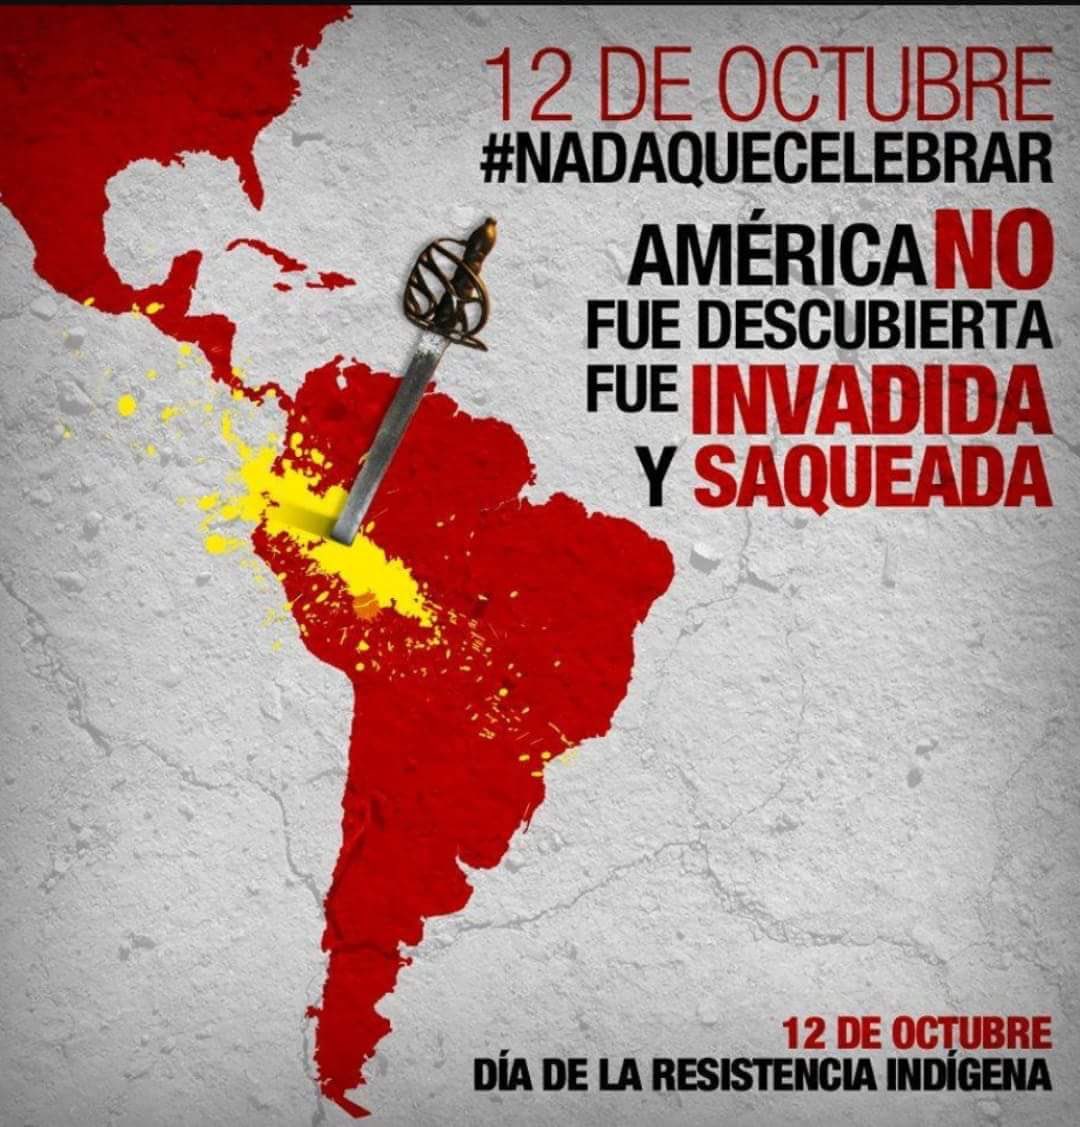 DÍA DE LUCHA Y RESISTENCIA, NADA QUE CELEBRAR, #12deOctubre #12octNadaQueCelebrar #PueblosIndígenas #libredeterminación